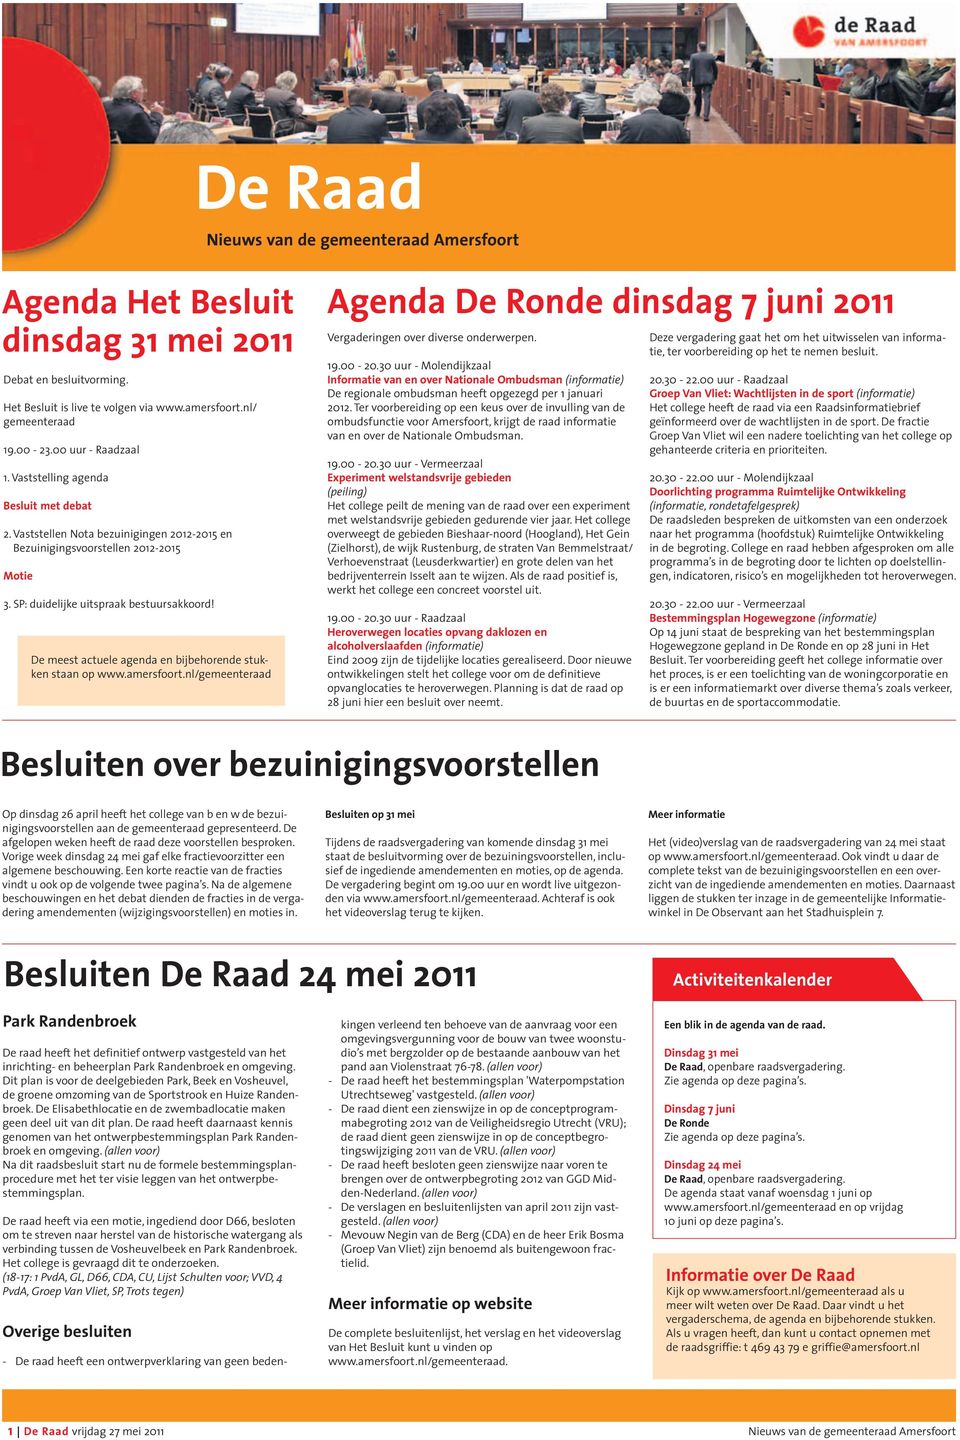 De meest actuele agenda en bijbehorende stukken staan op www.amersfoort.nl/gemeenteraad Agenda De Ronde dinsdag 7 juni 2011 Vergaderingen over diverse onderwerpen. 19.00-20.